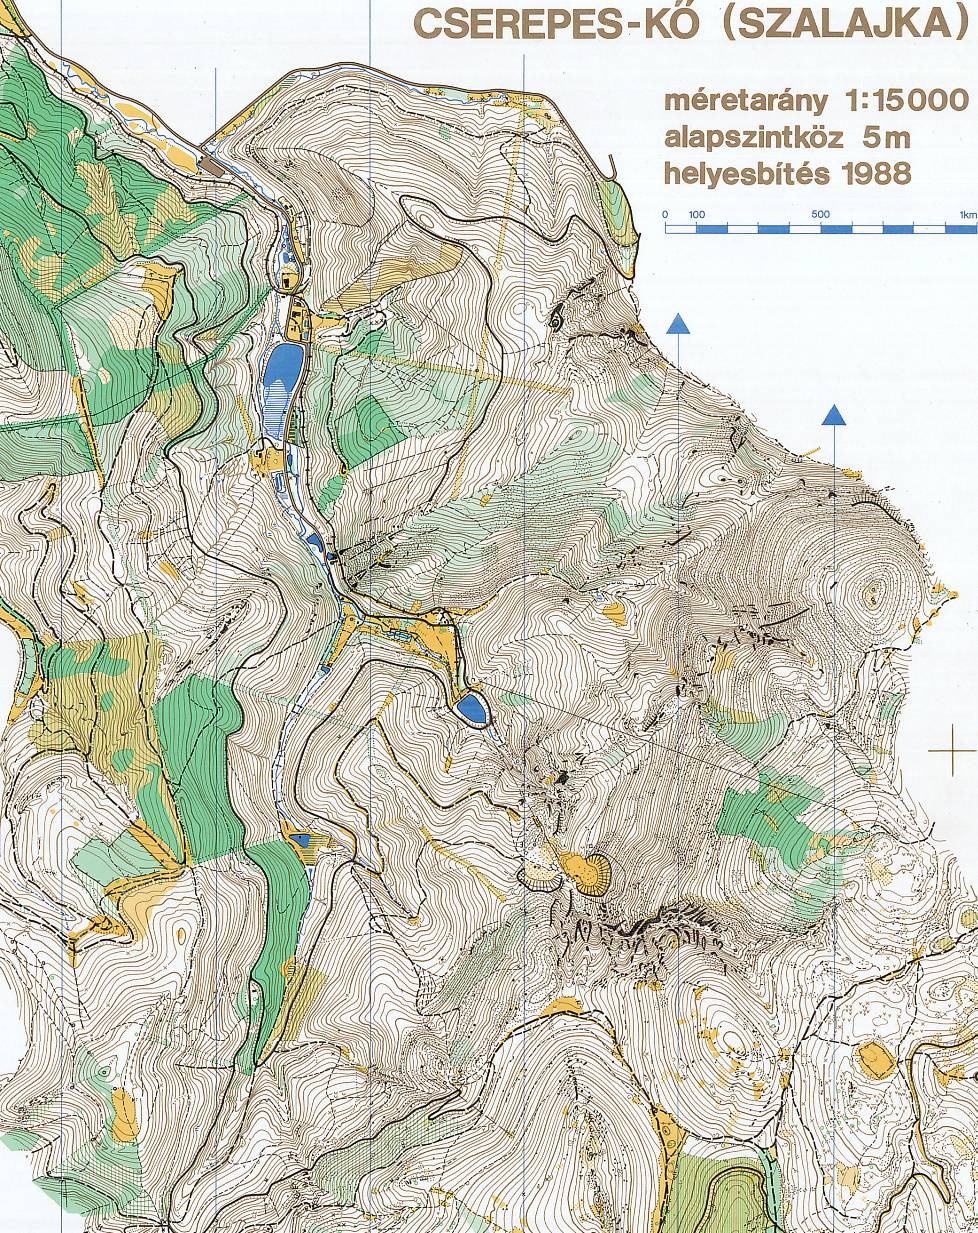 4. ábra Részlet az 1988-as Tájfutó Világ Kupa magyar futamának térképéből. Az egyszínű másolat az Istállós-kői-barlang környékét ábrázolja. A 3.